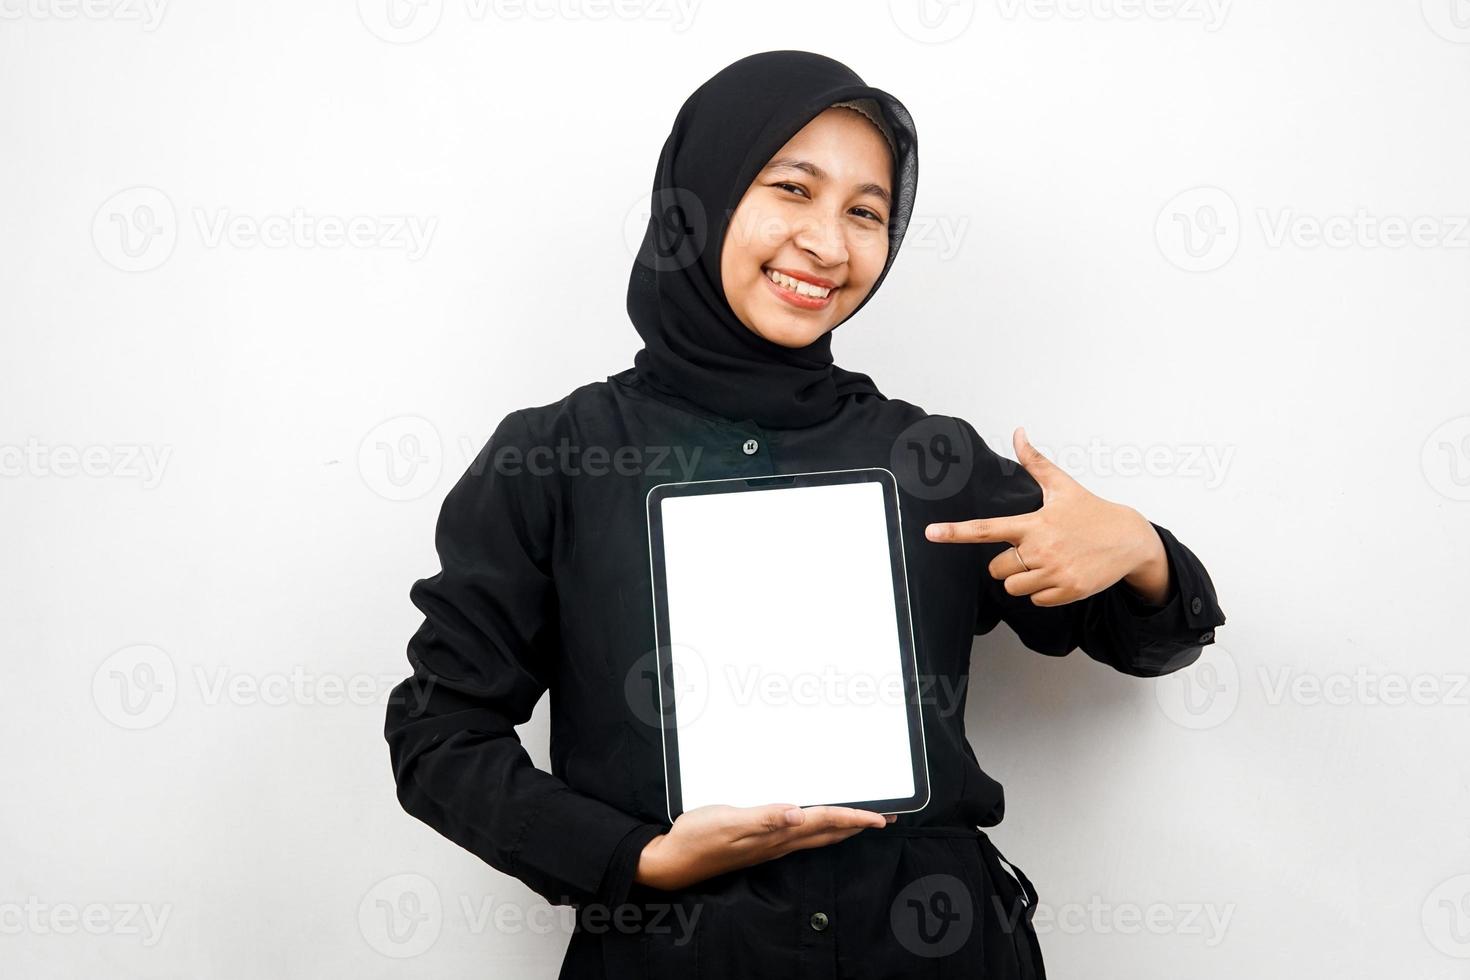 belle jeune femme musulmane asiatique souriante, tenant une tablette à la main avec un écran blanc ou blanc, faisant la promotion de l'application, faisant la promotion du produit, présentant quelque chose, excité et joyeux, isolé sur fond blanc photo